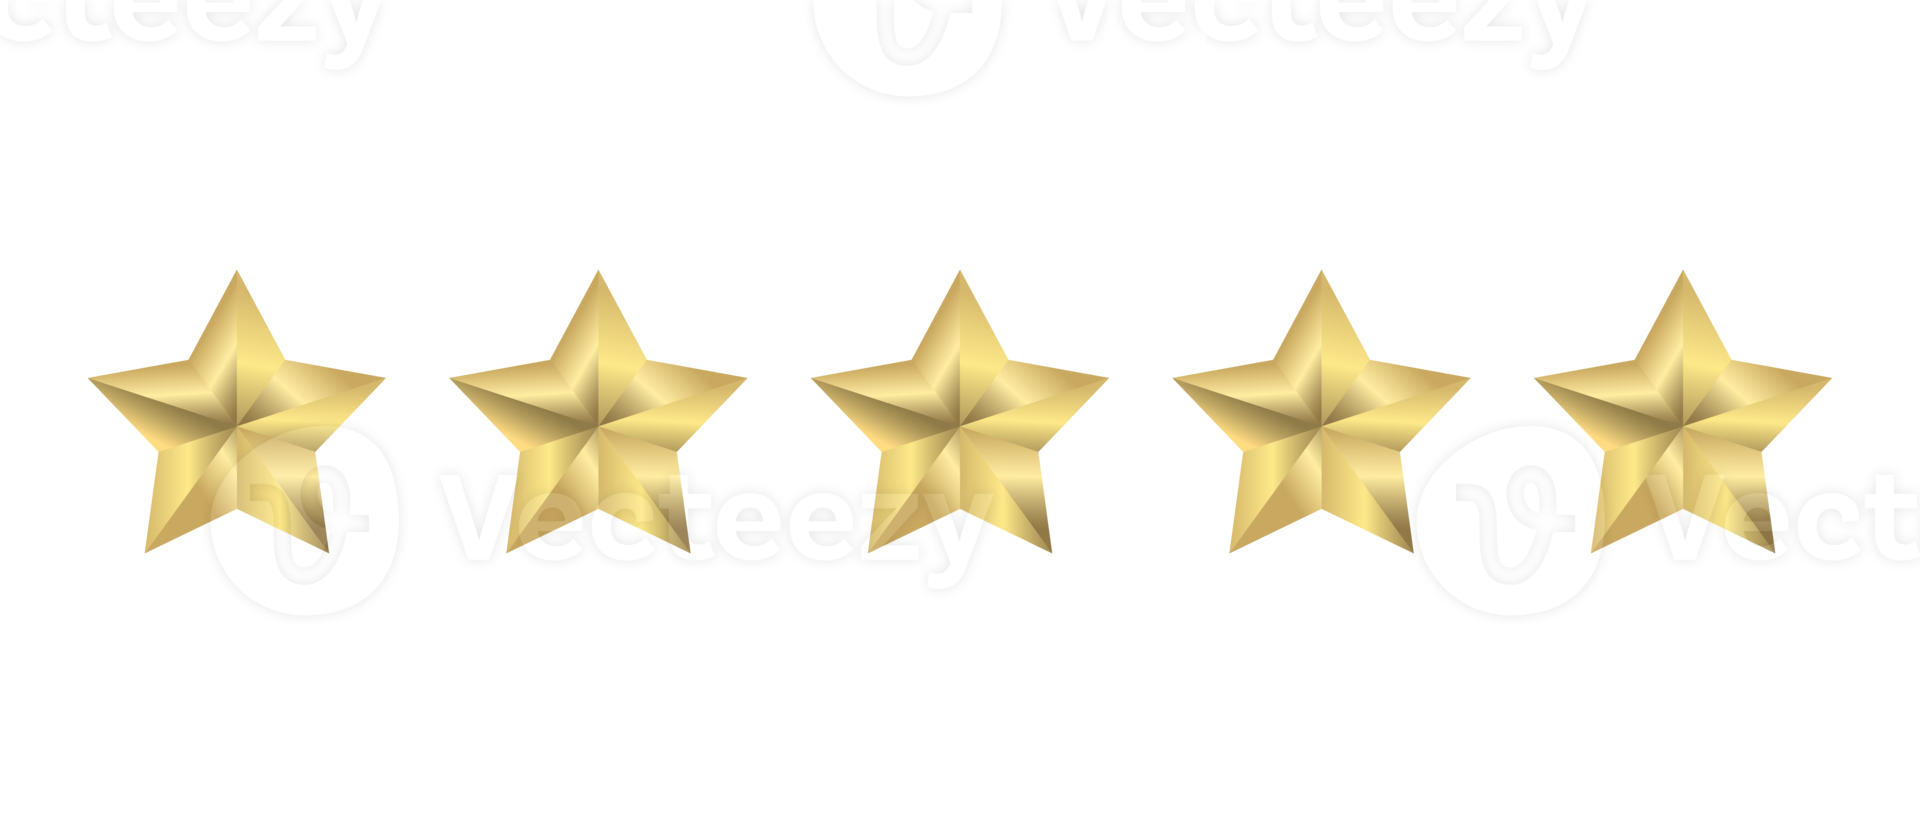 vijf sterren rating pictogram png